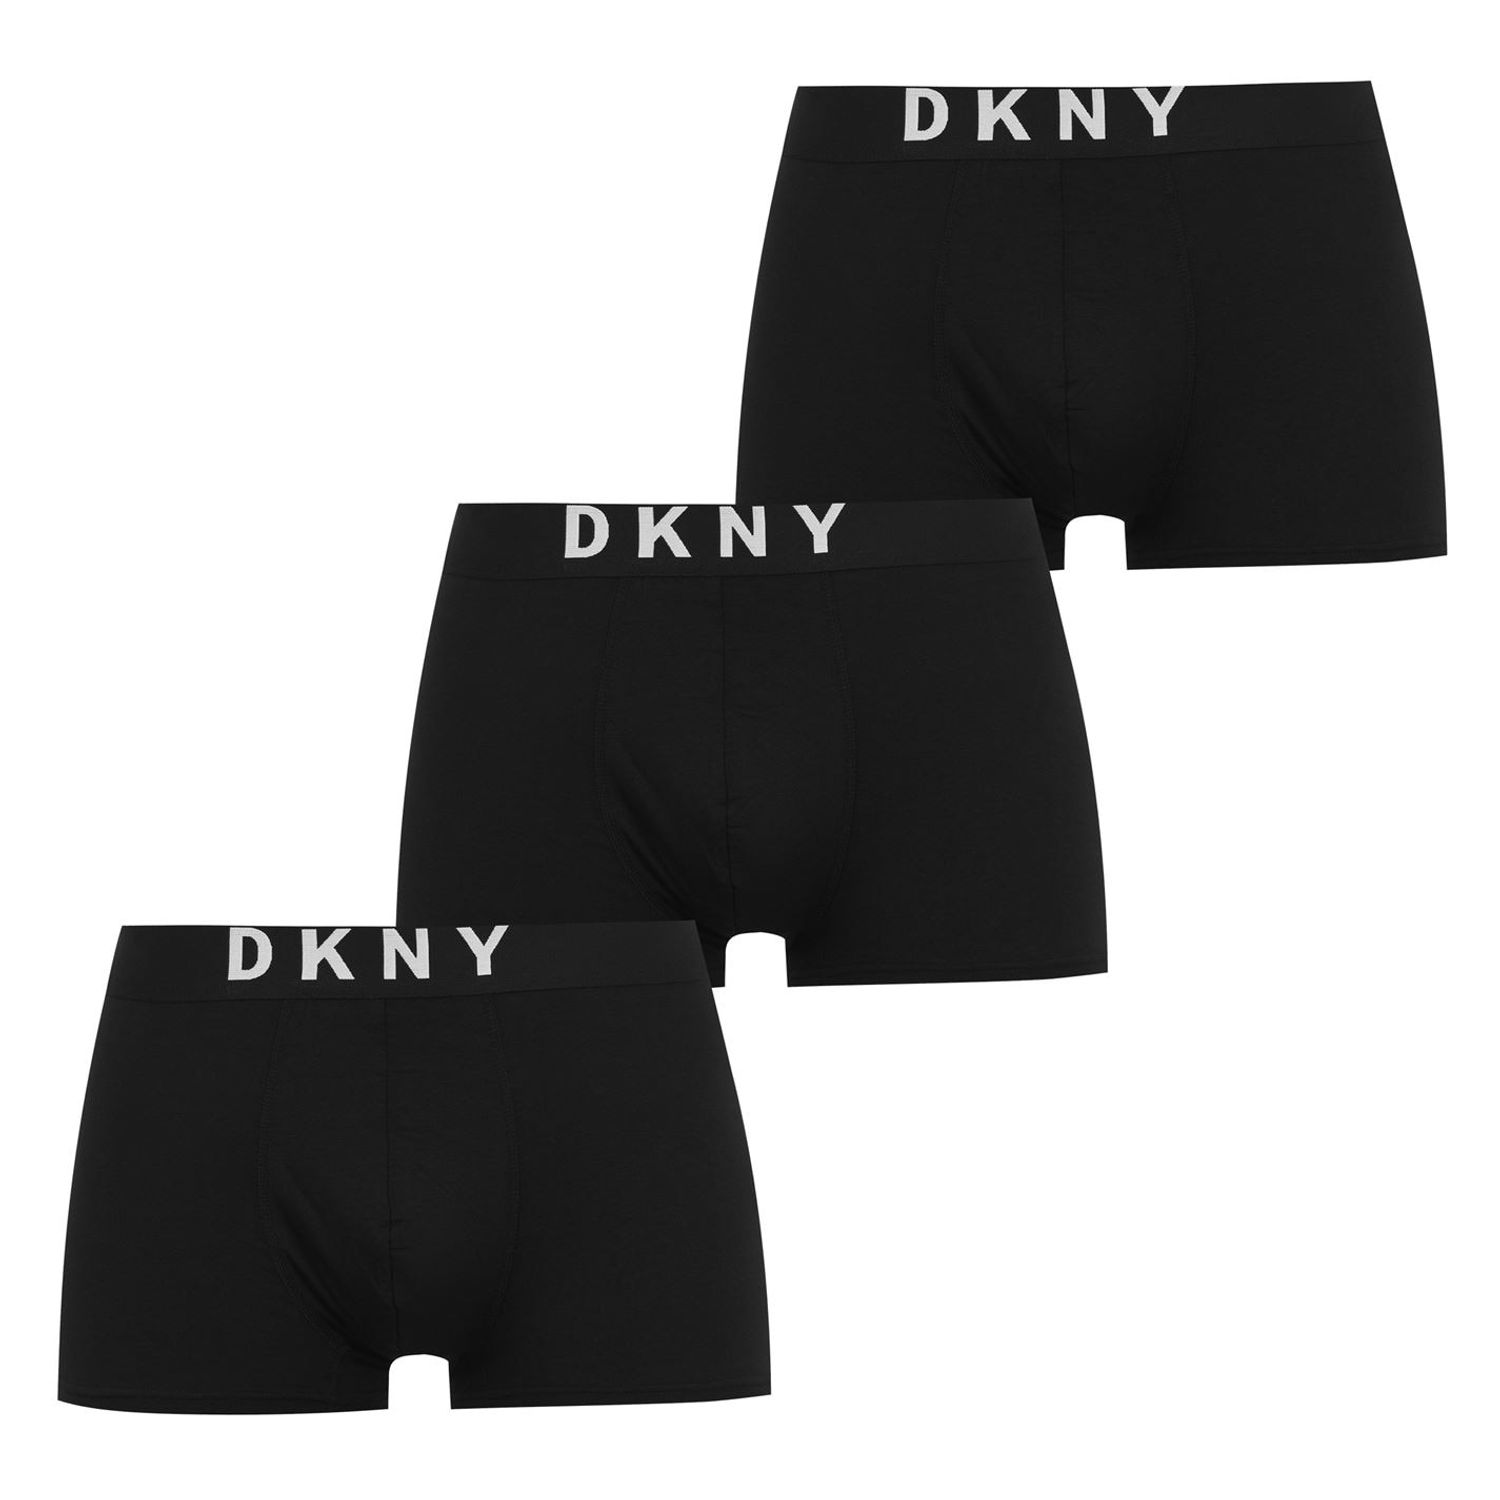 https://gtl-uk.prod.myauroraassets.com/p/485714/3-pack-boxer-shorts-fr1659087dkny-3-pack-boxer-shorts-fr1659087.jpg?t=rp&w=1500&h=1500